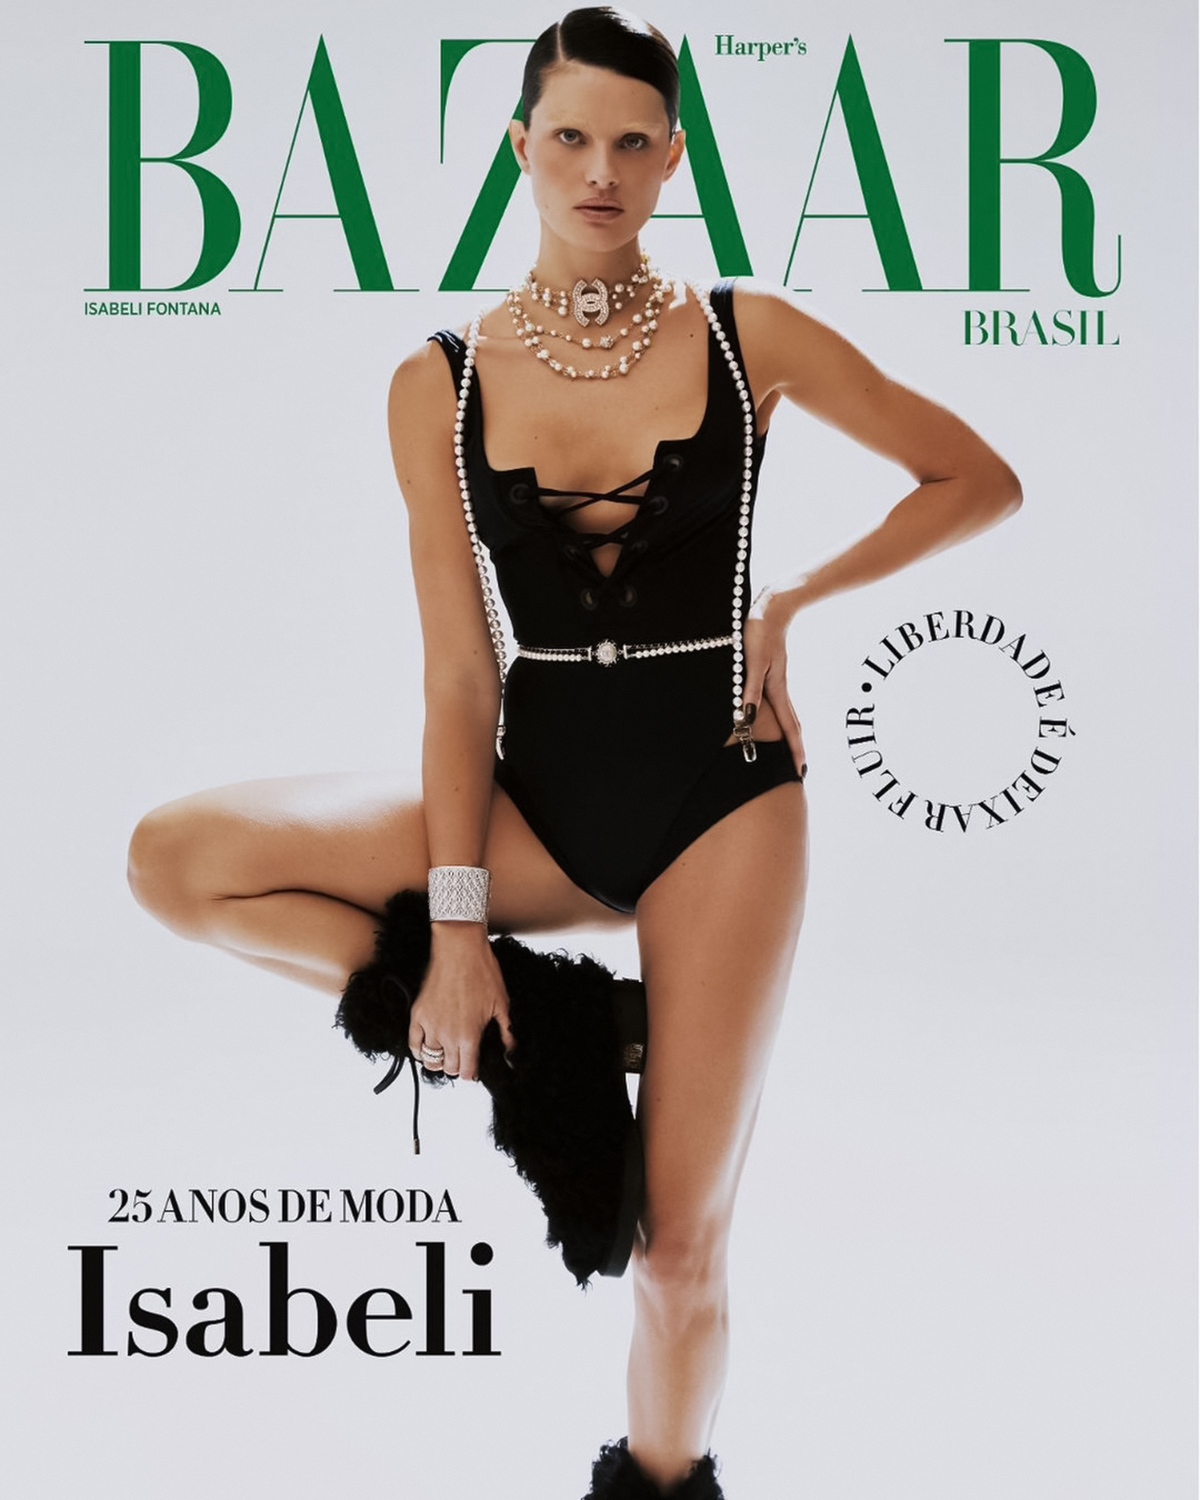 Isabeli Fontana covers Harper’s Bazaar Brazil September 2021 by Lufré